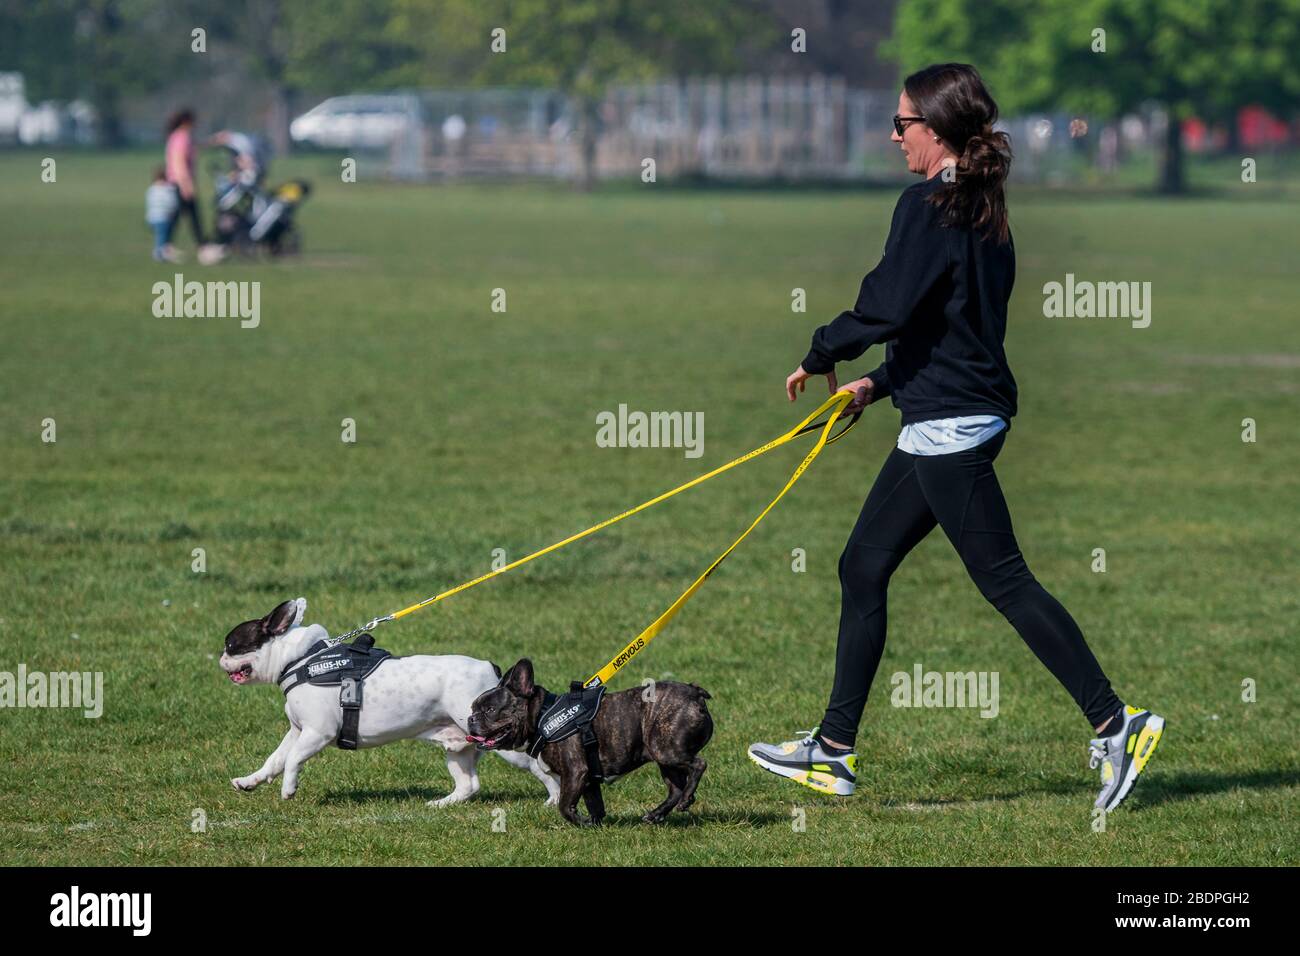 Courir avec leur chien - Clapham Common est assez calme maintenant Lambeth Conseil a enregistré tous les bancs. Le « verrouillage » se poursuit pour l'épidémie de Coronavirus (Covid 19) à Londres. Crédit: Guy Bell/Alay Live News Banque D'Images